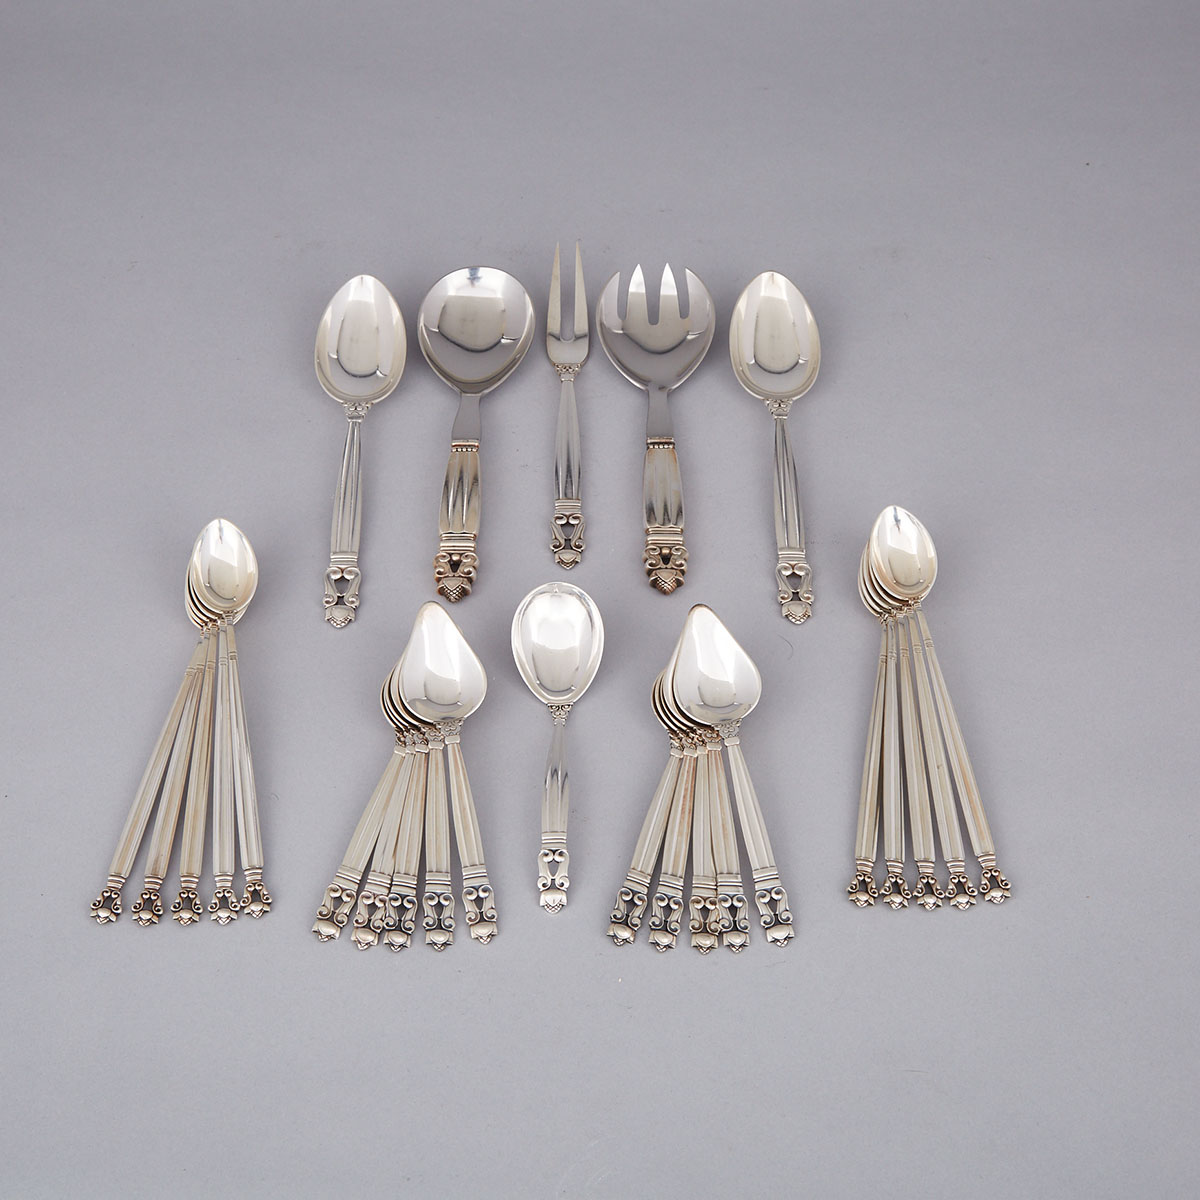 Danish Silver ‘Acorn’ Pattern Flatware, Johan Rohde for Georg Jensen, Copenhagen, 20th century